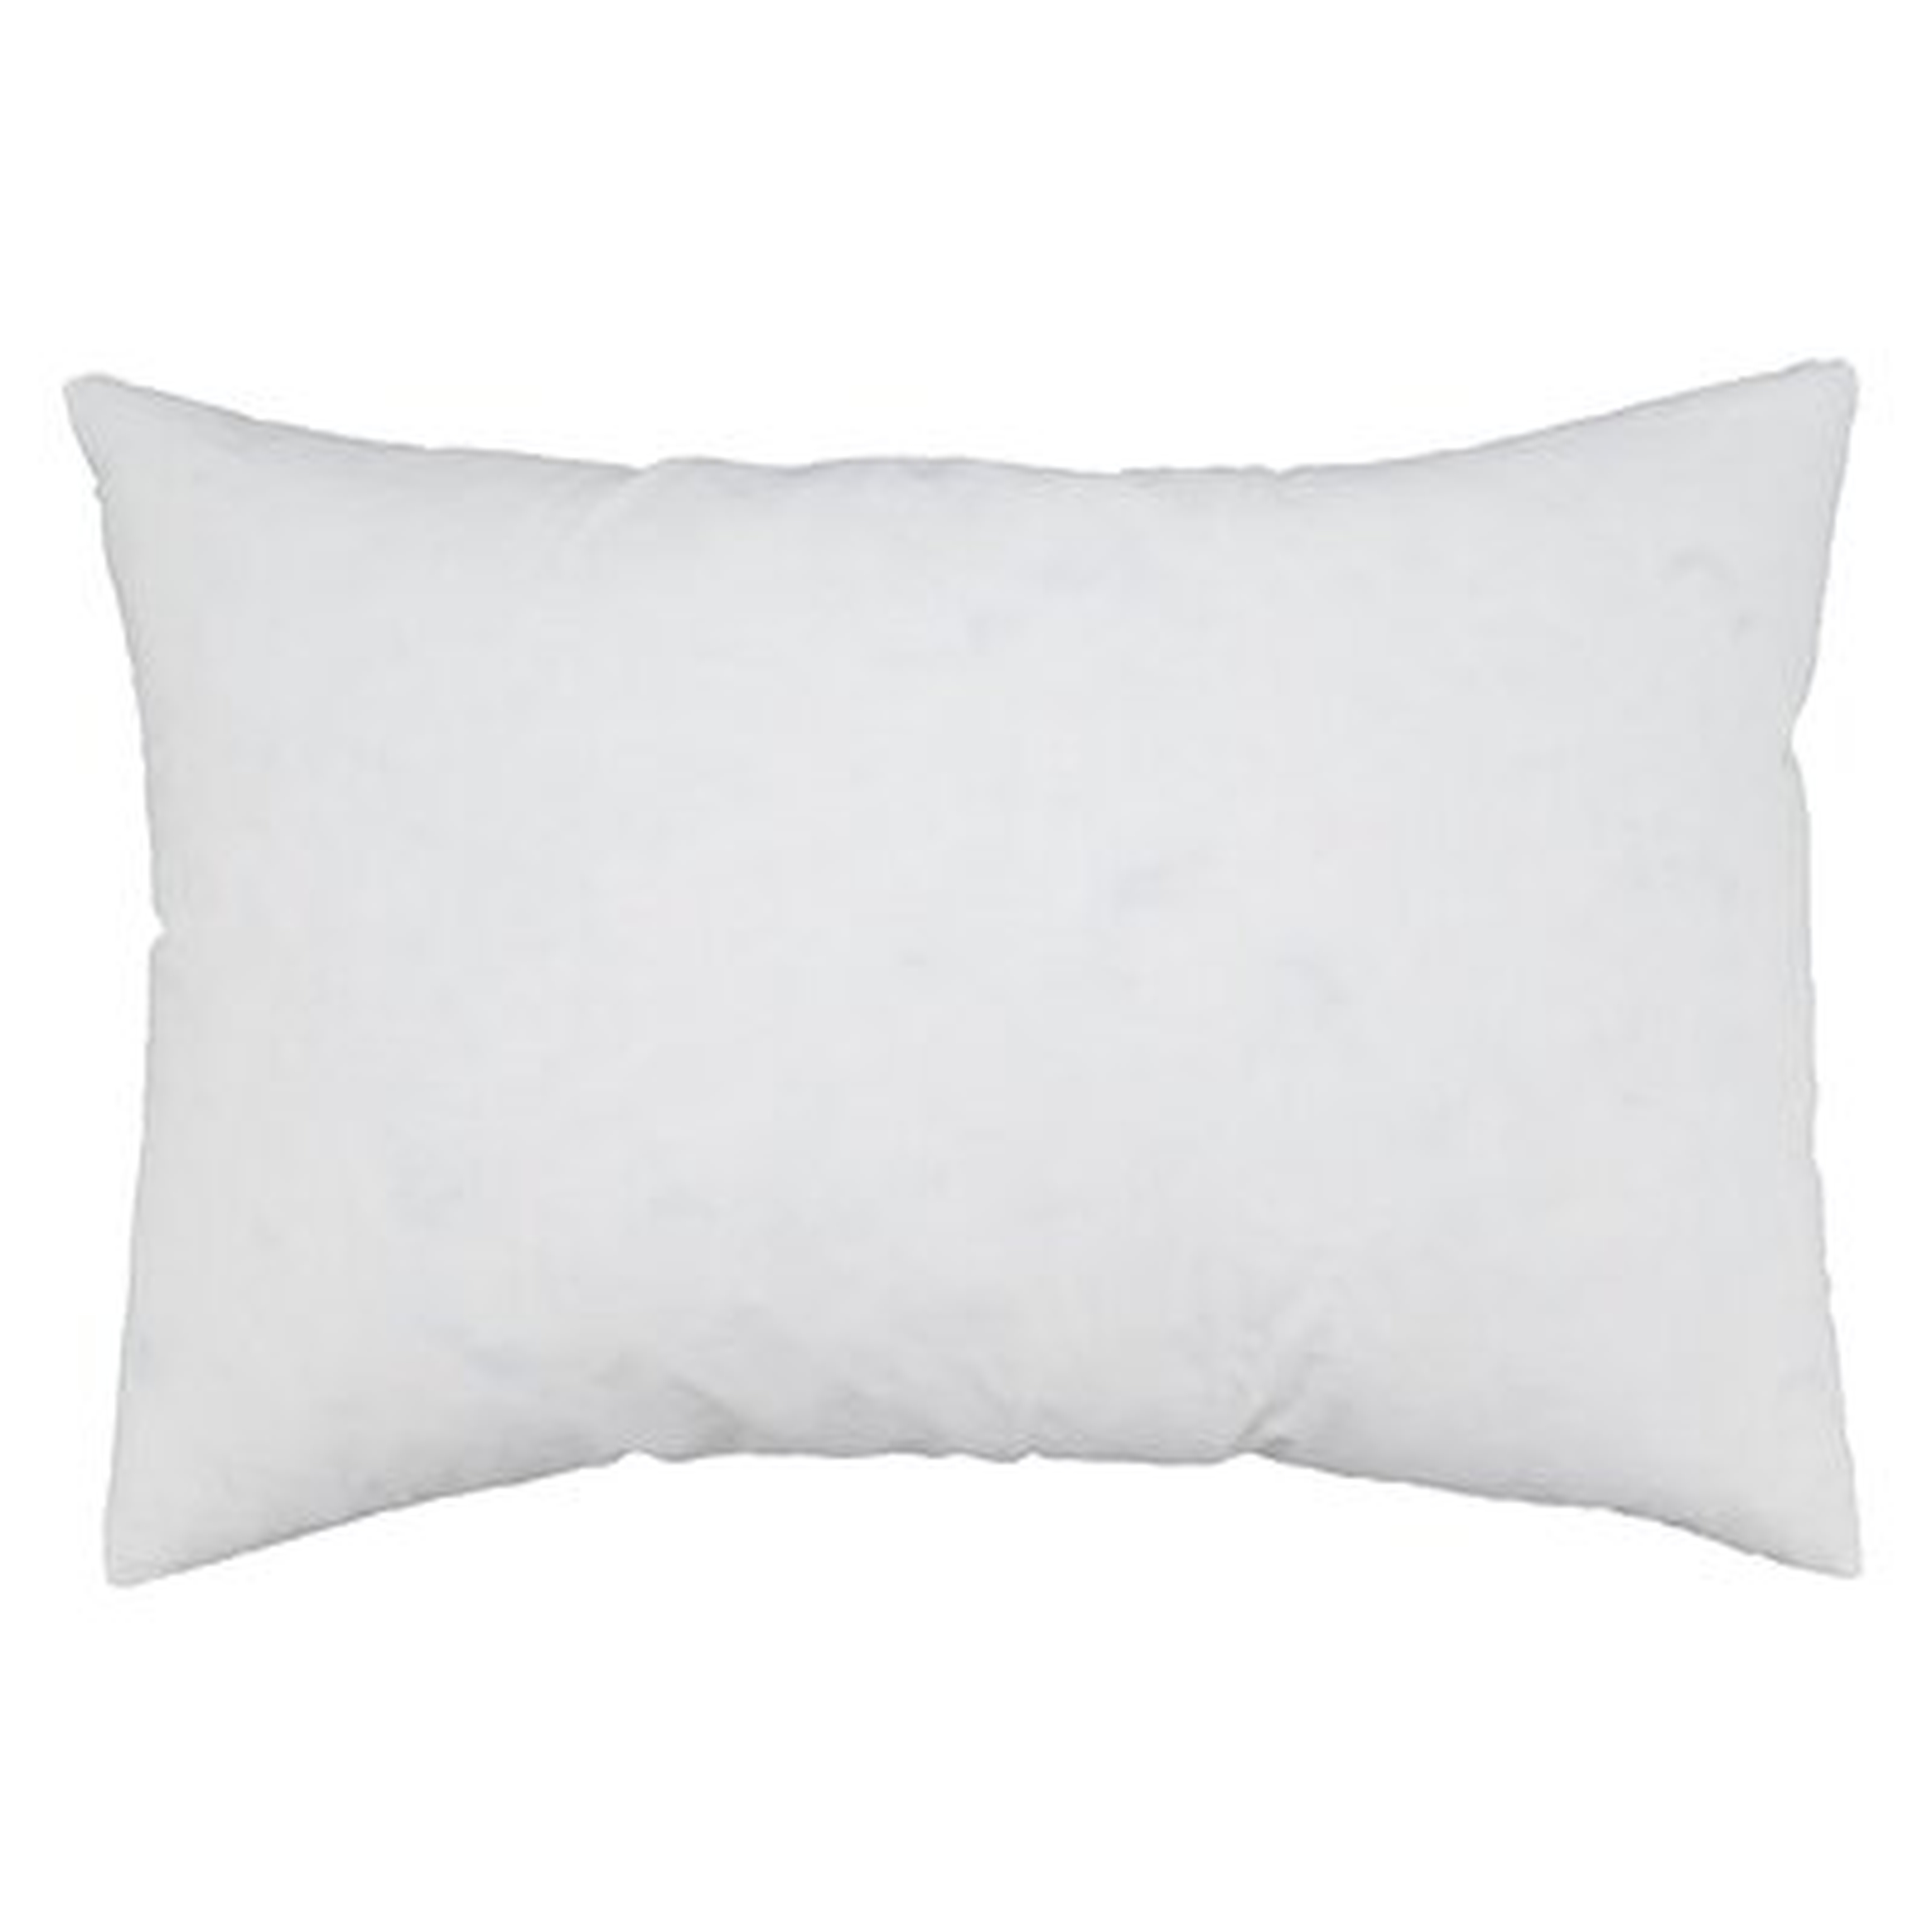 Pillow Insert - Wayfair